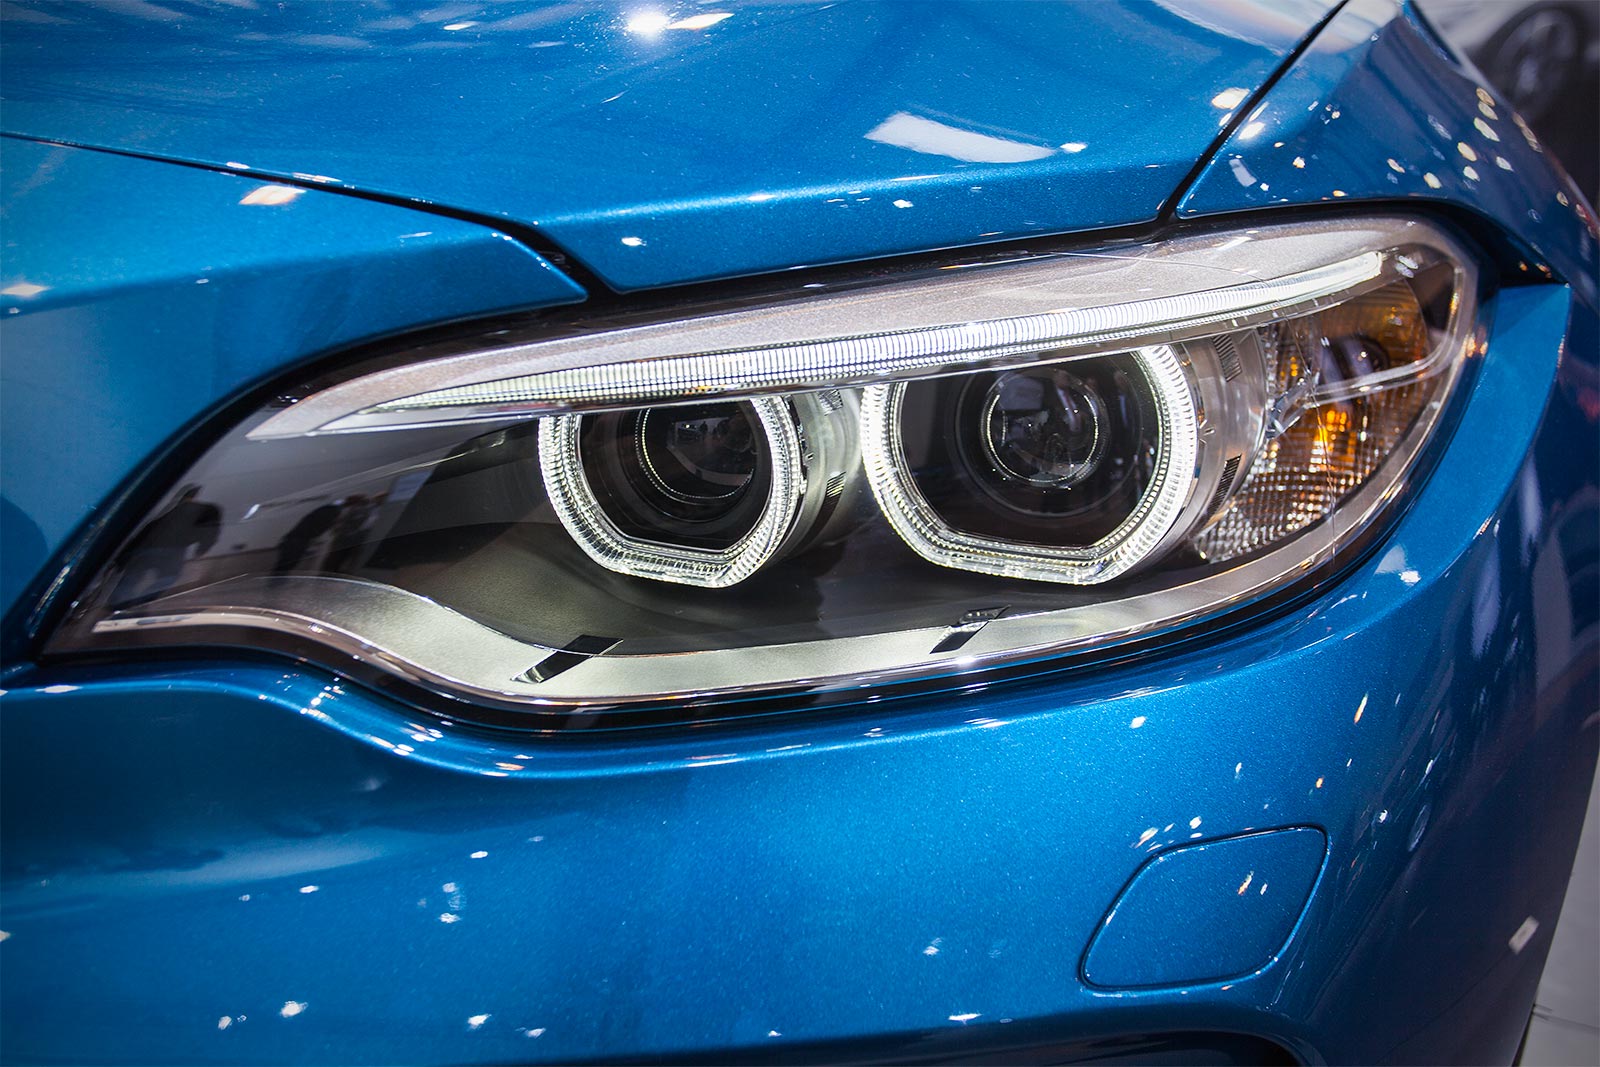 Foto: BMW M2, Scheinwerfer mit Xenon-Licht und adaptiven Kurvenlicht  (vergrößert)